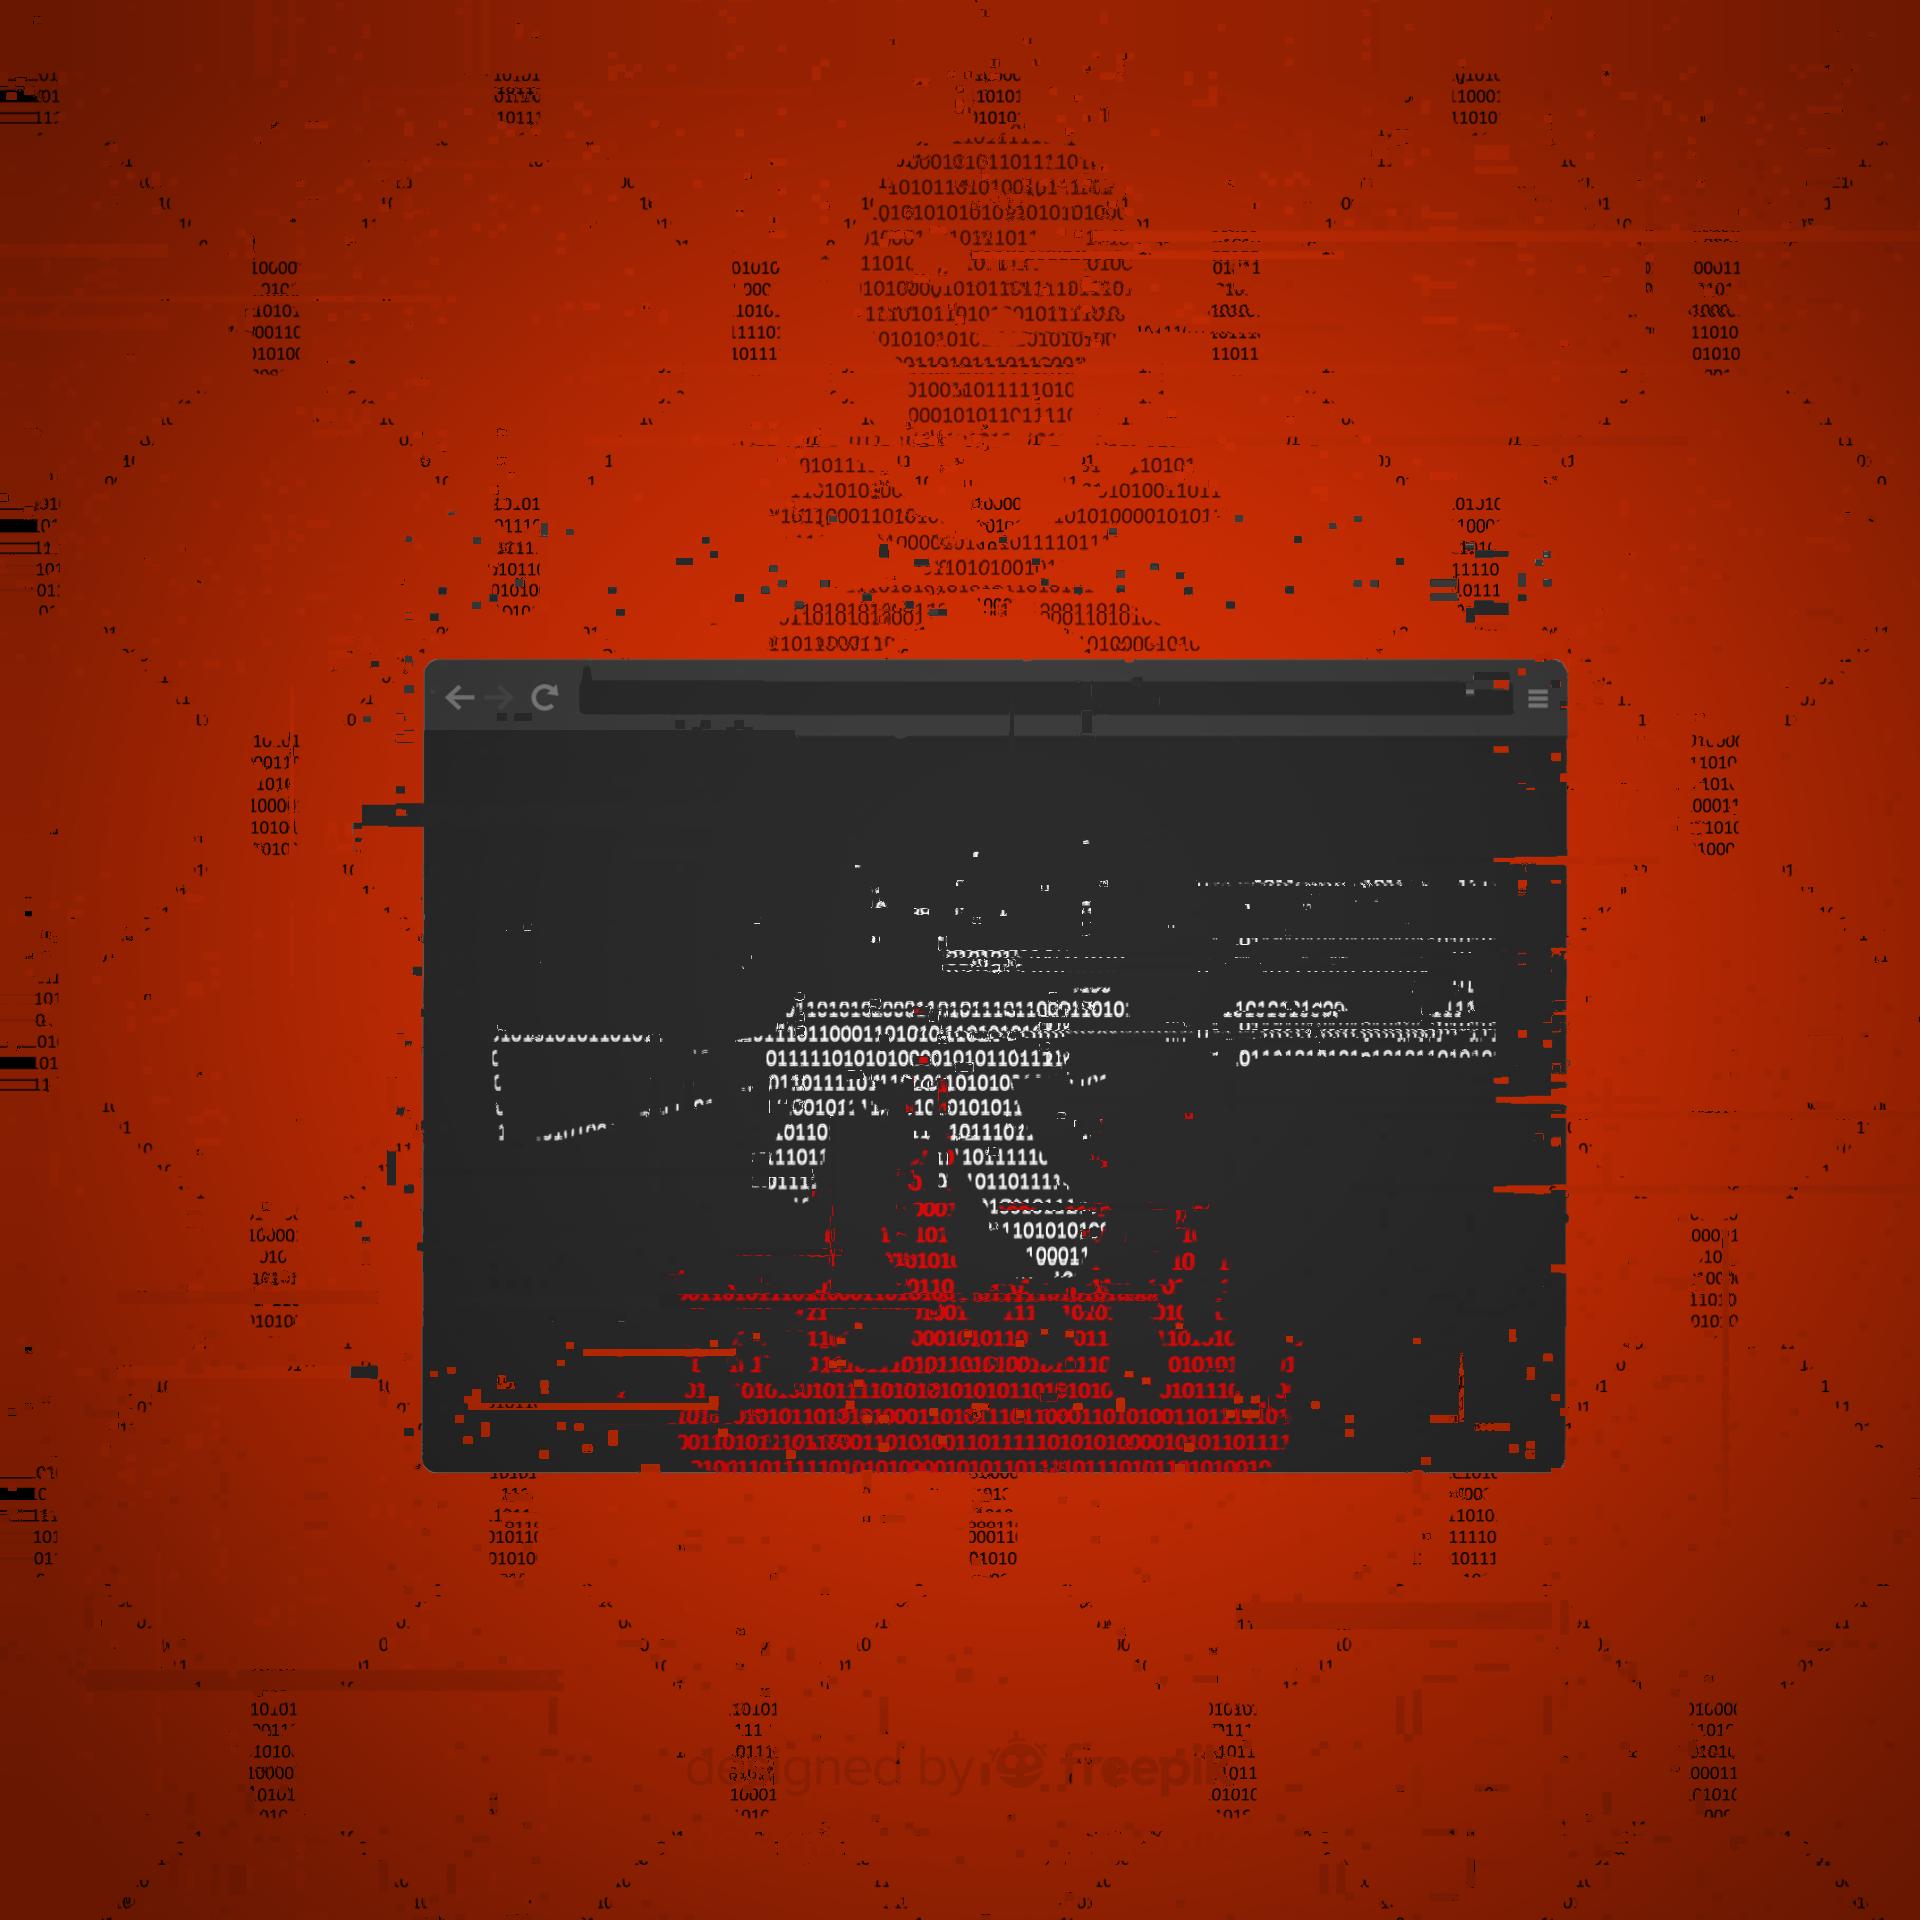 Okno przeglądarki internetowej, w nim kształt karabinu AK-47 oraz płomieni złożony z zer i jedynek